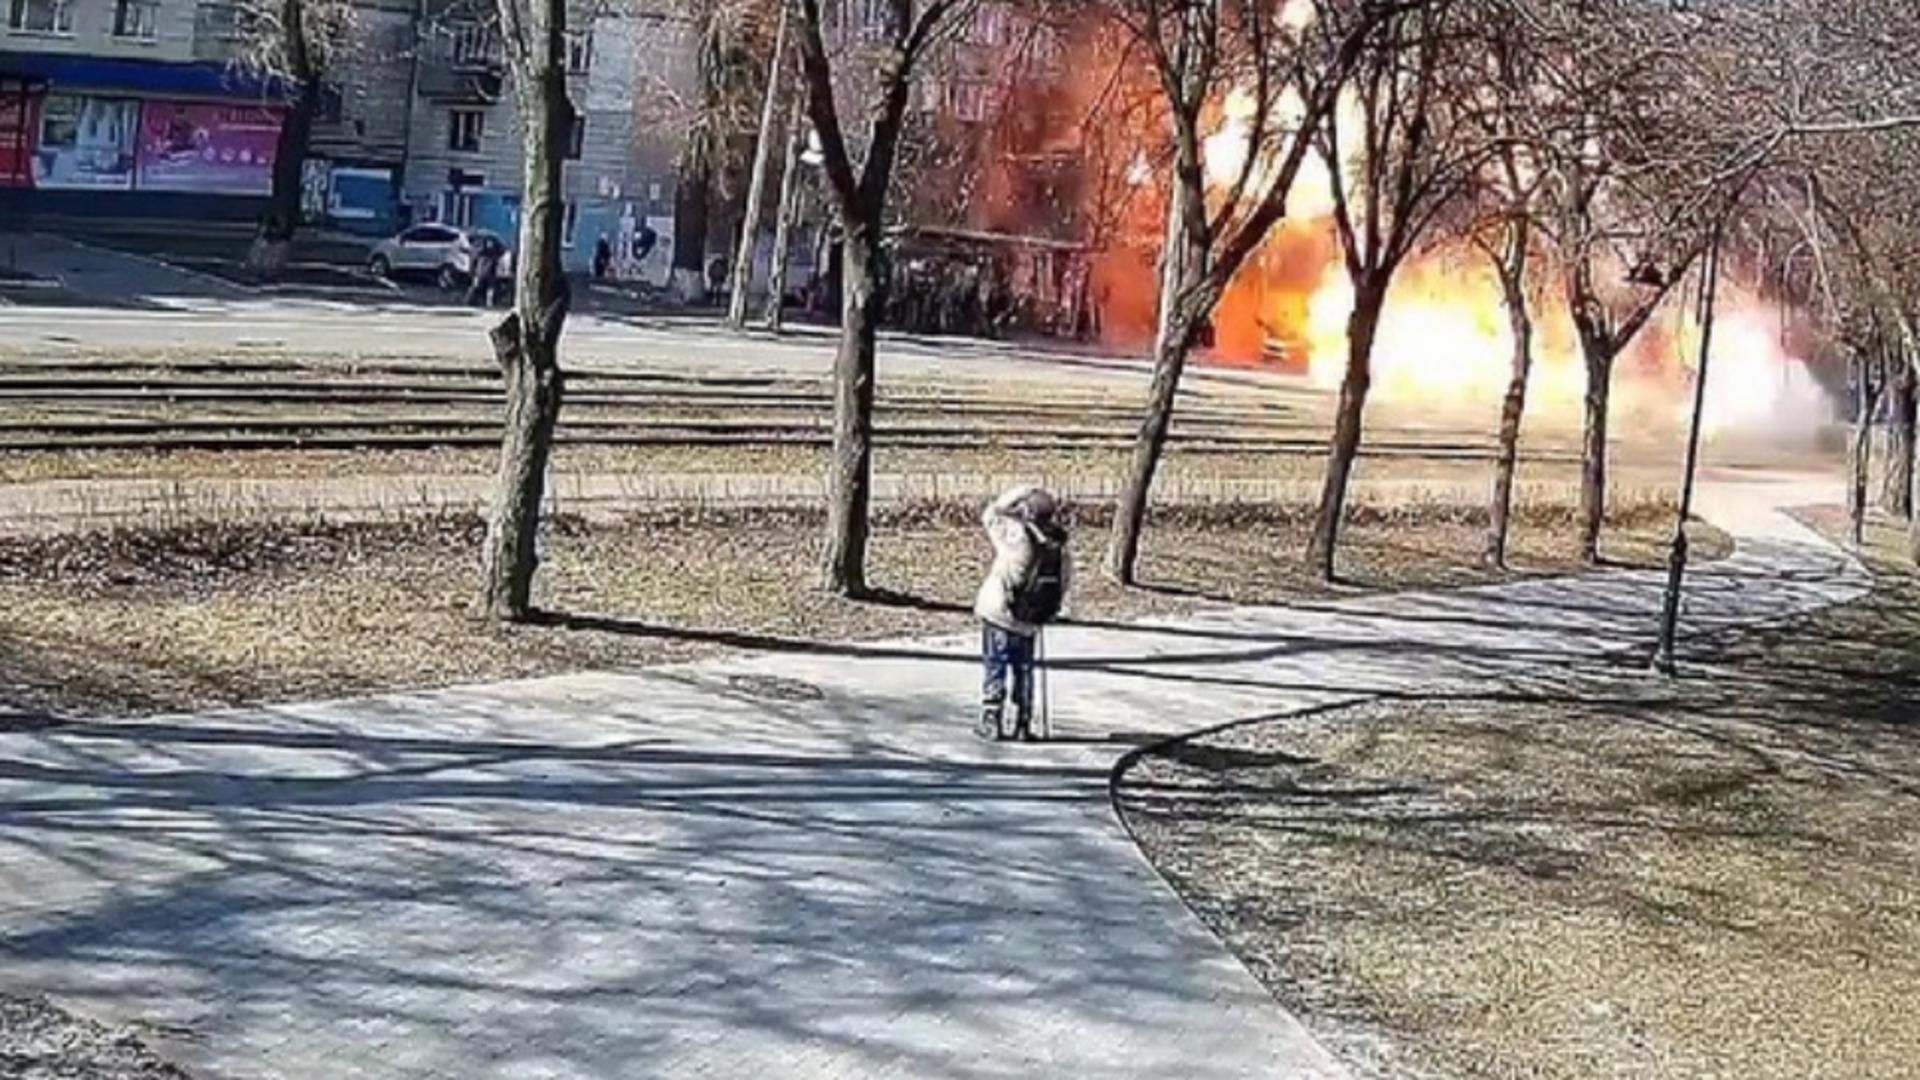 Momentul în care o rachetă rusească cade pe o stradă circulată în Kiev Foto: Twitter.com